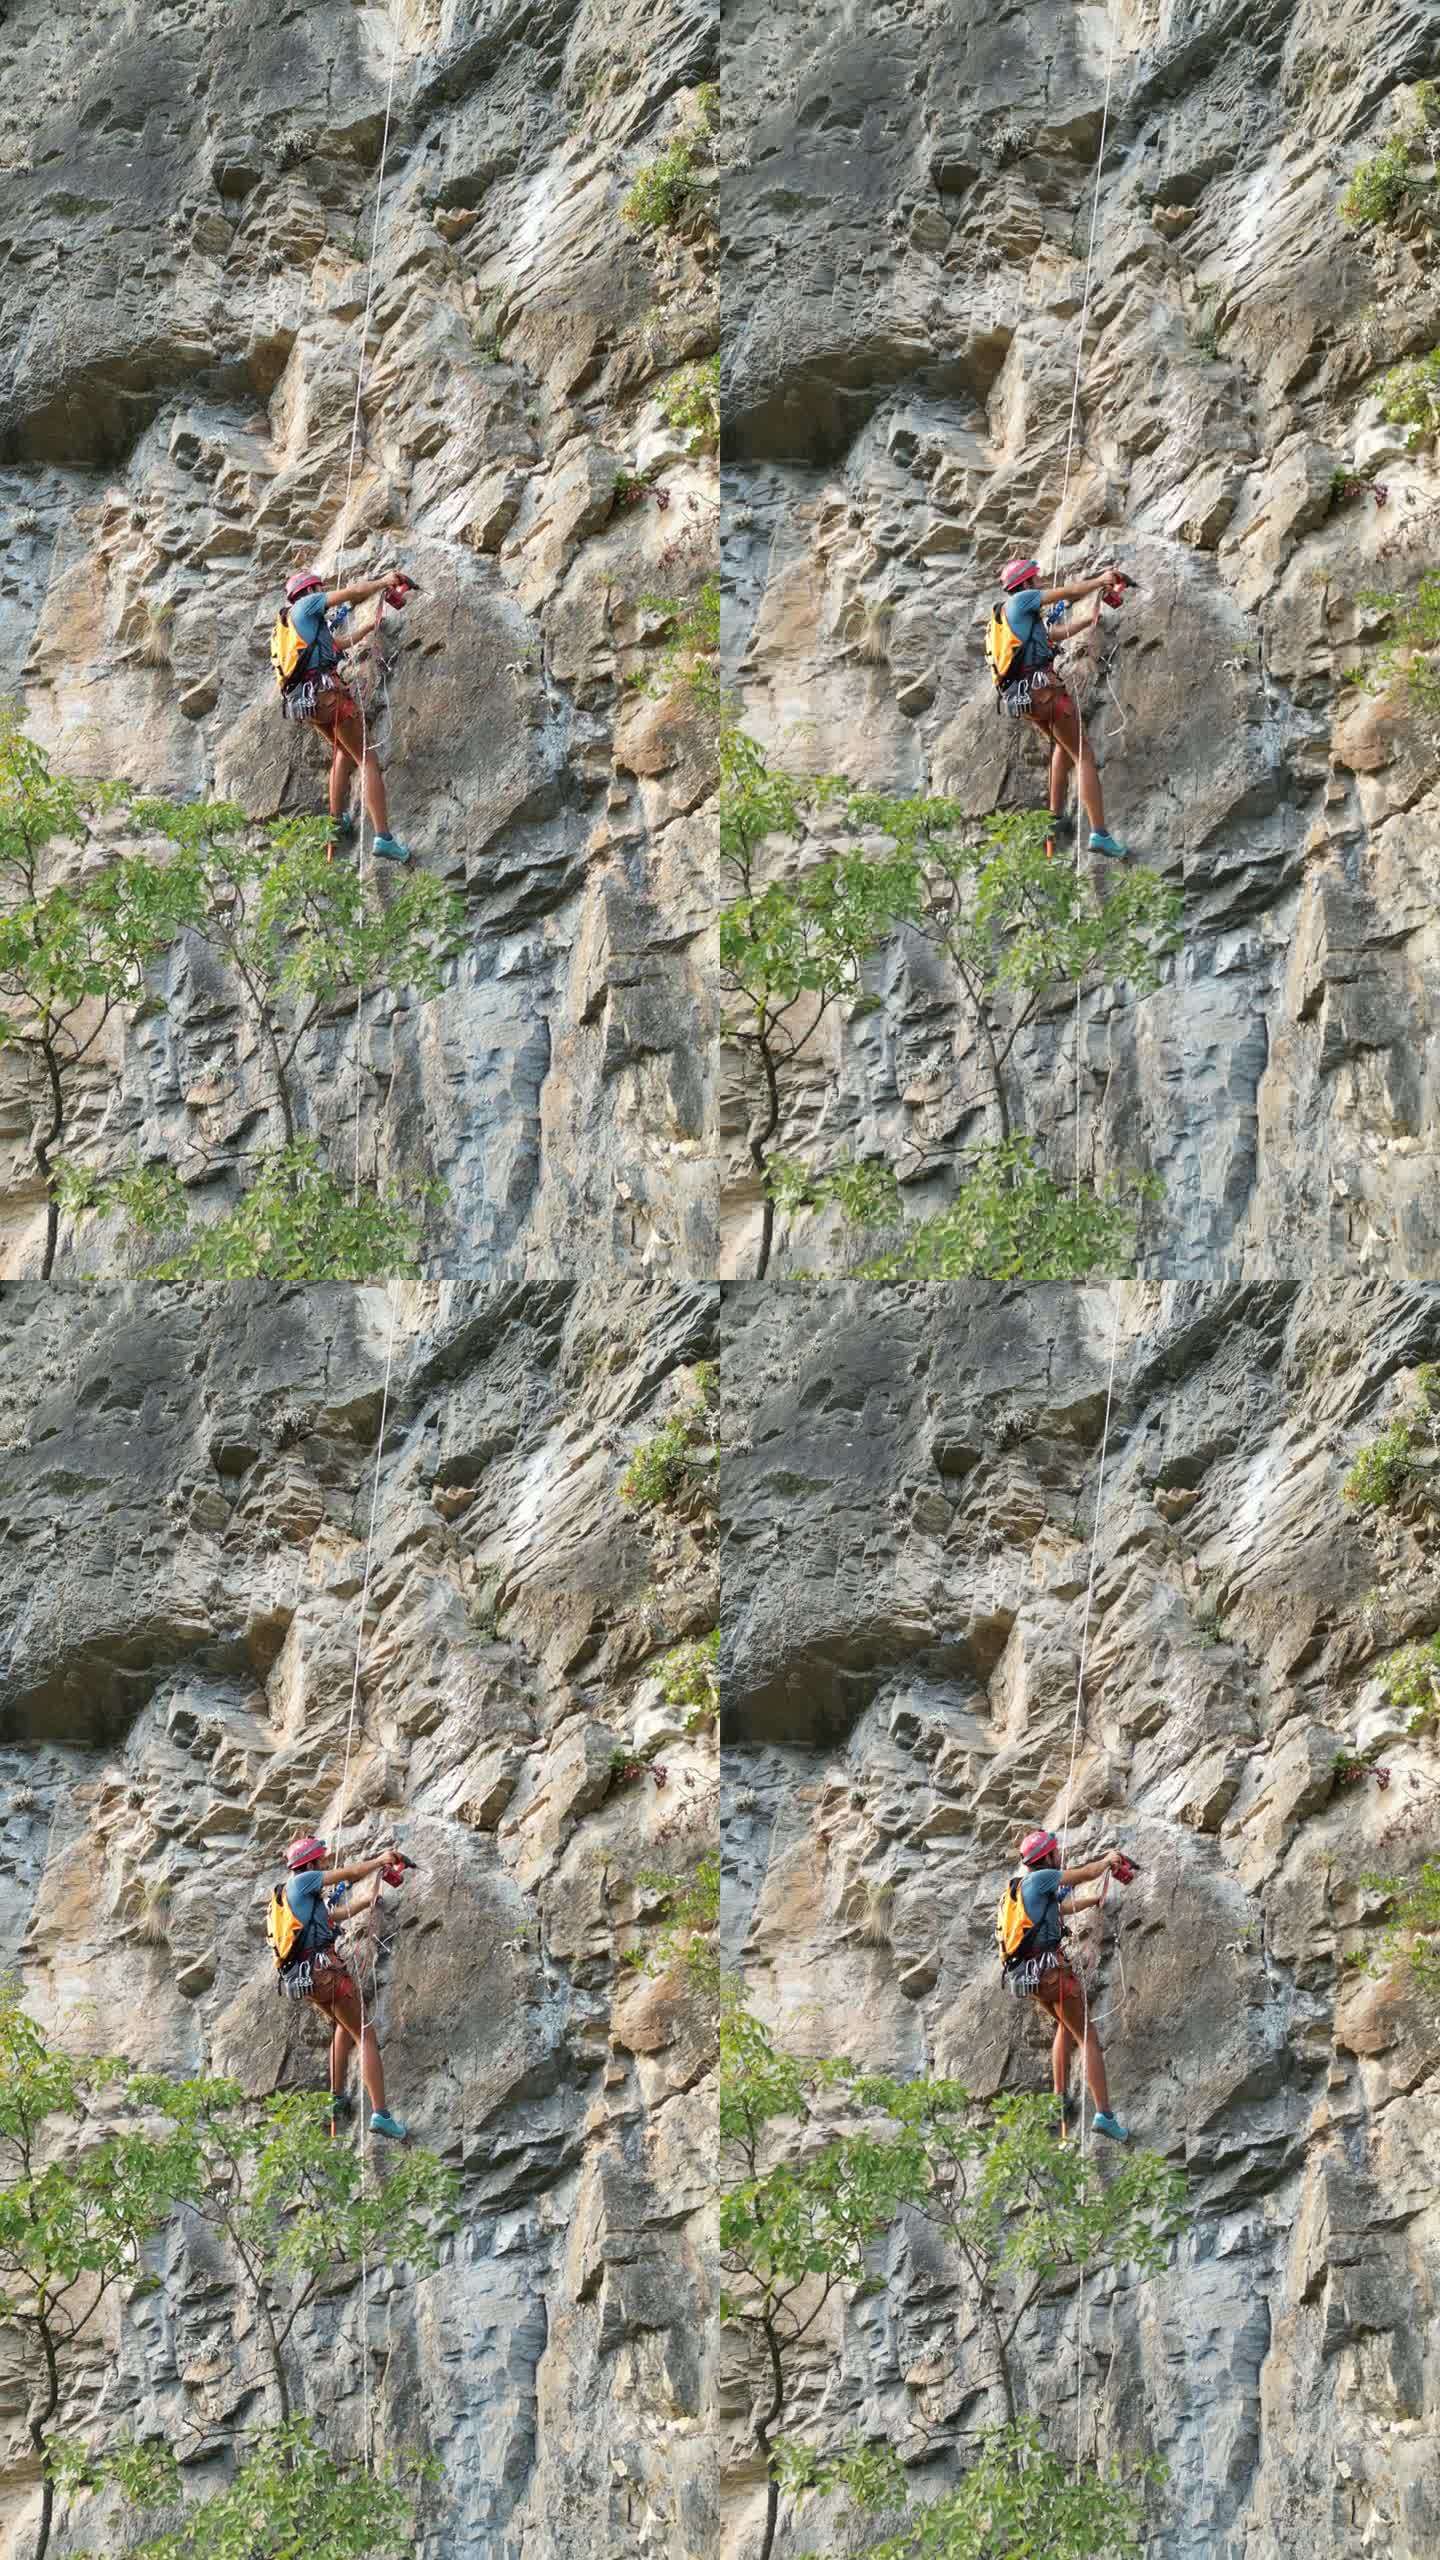 戴着红色头盔的攀登者用凿岩机和旋锤在攀登绳上开辟了一条新的攀登路线。